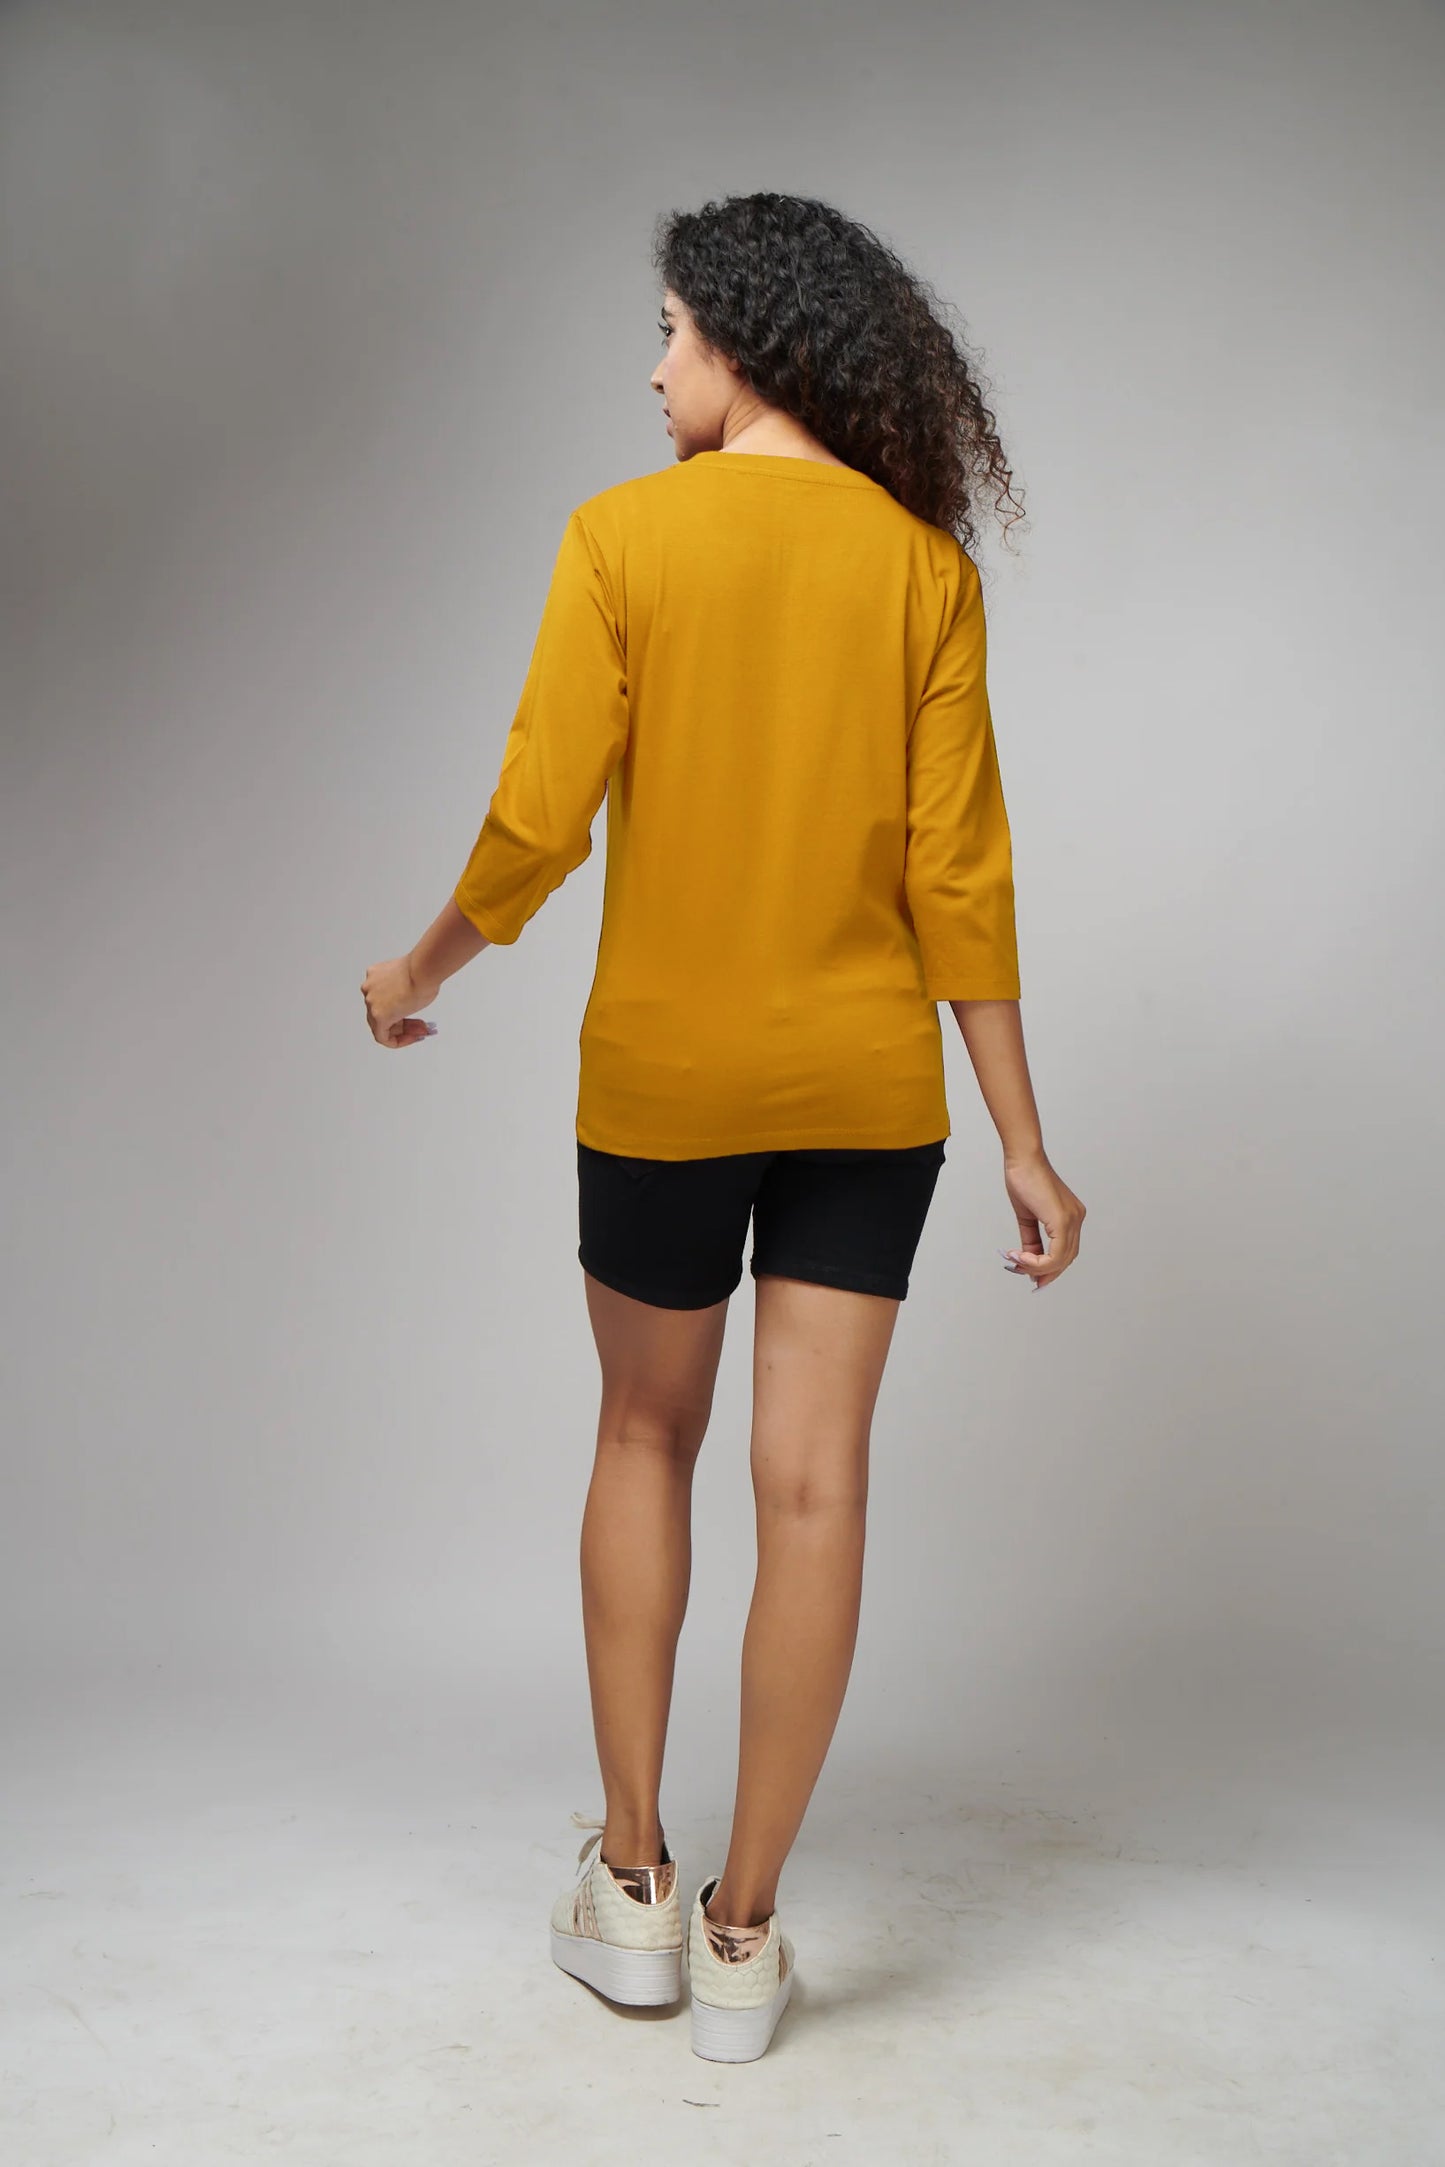 Women's Basic Mustard Full Sleeves T-Shirt